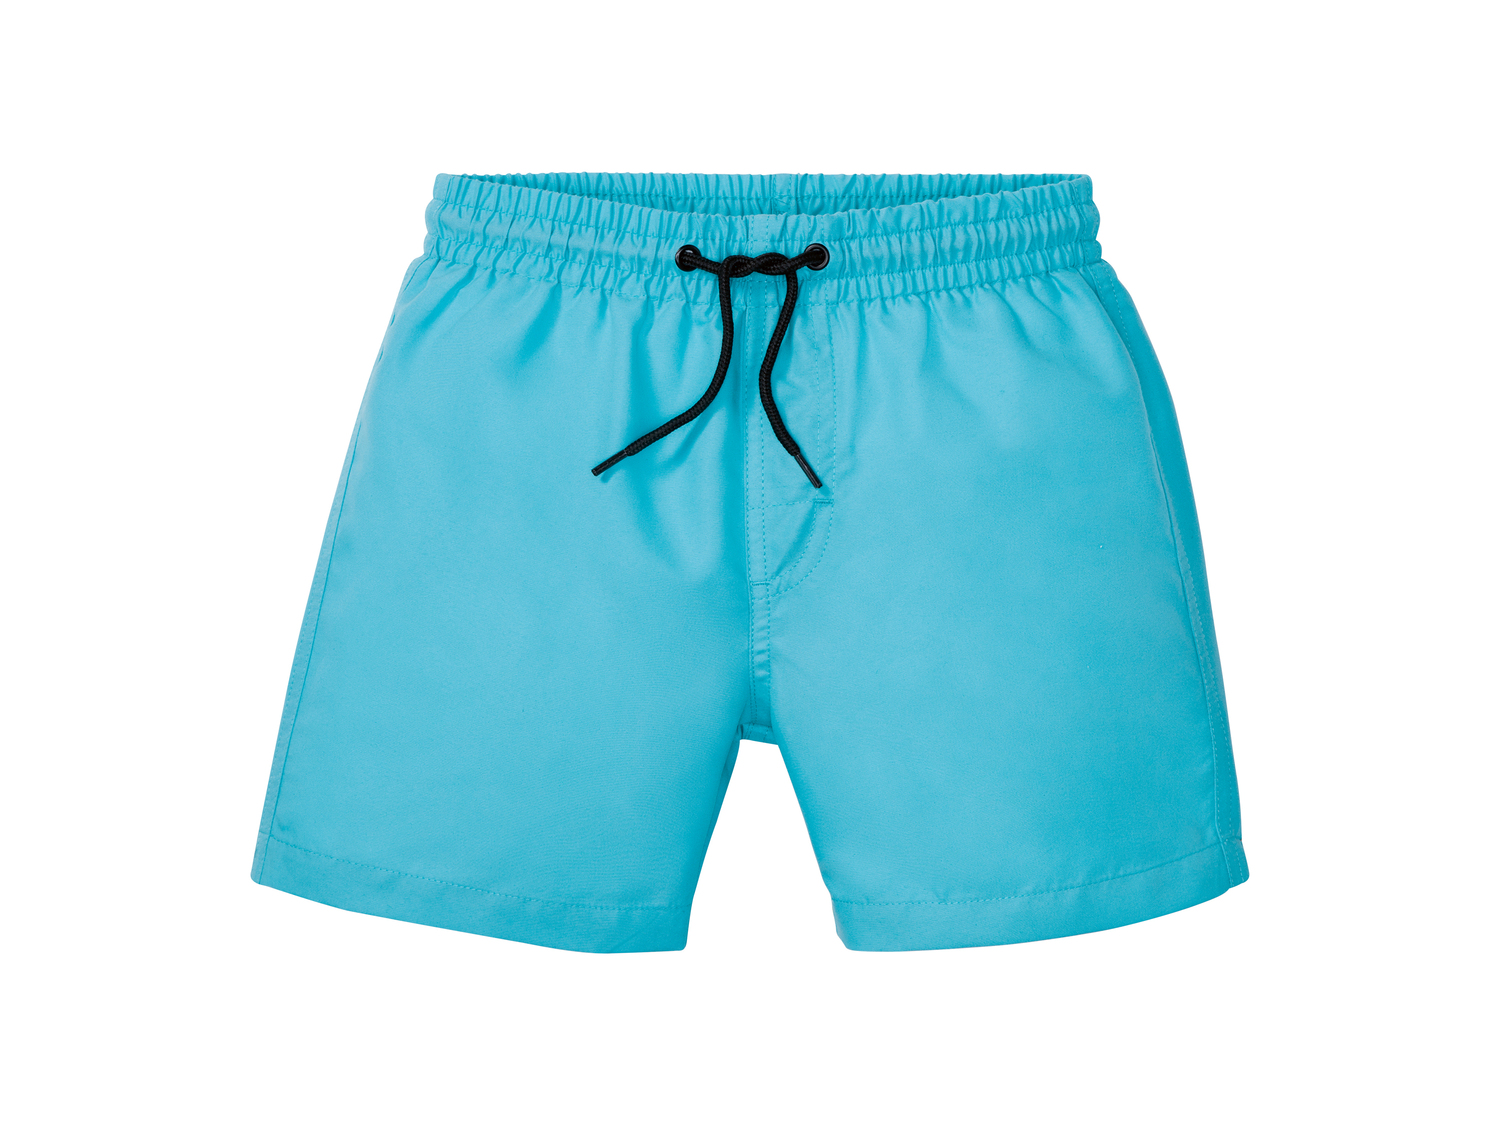 Shorts mare da bambino Pepperts_nero, prezzo 4.99 &#8364; 
Età: 6-14 anni
Taglie ...